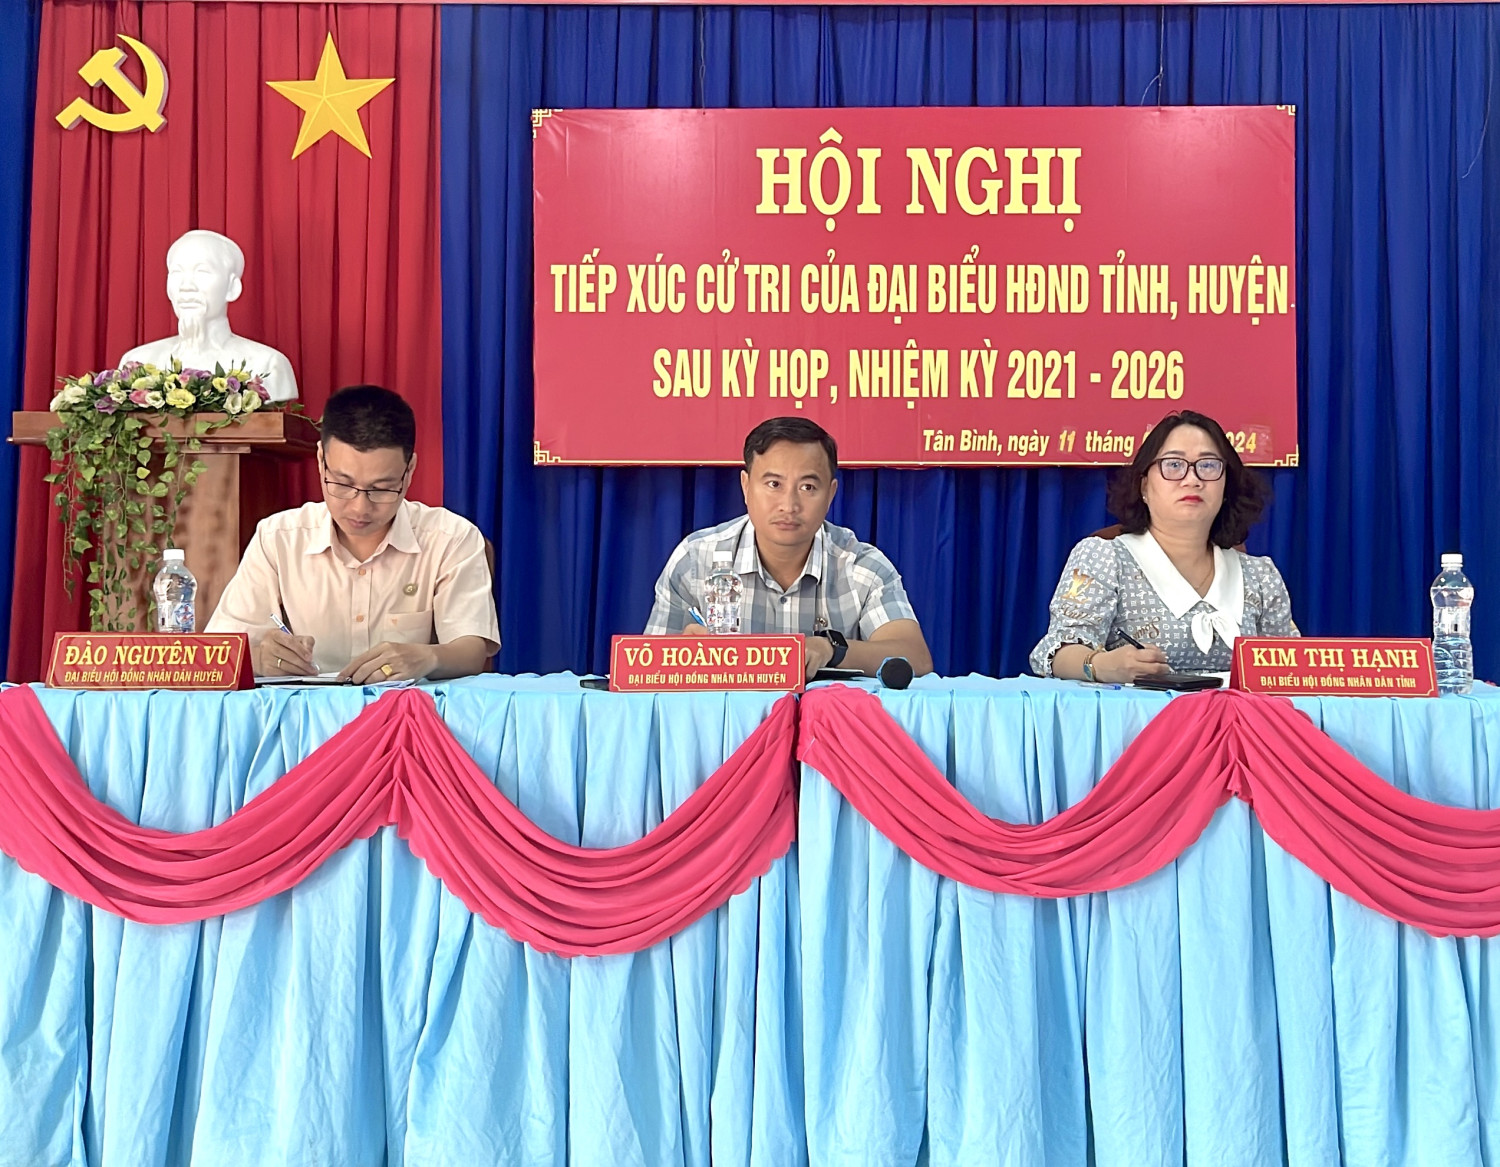 Đại biểu HĐND tỉnh, huyện TCXT xã Tân Bình (huyện Tân Biên) sau kỳ họp